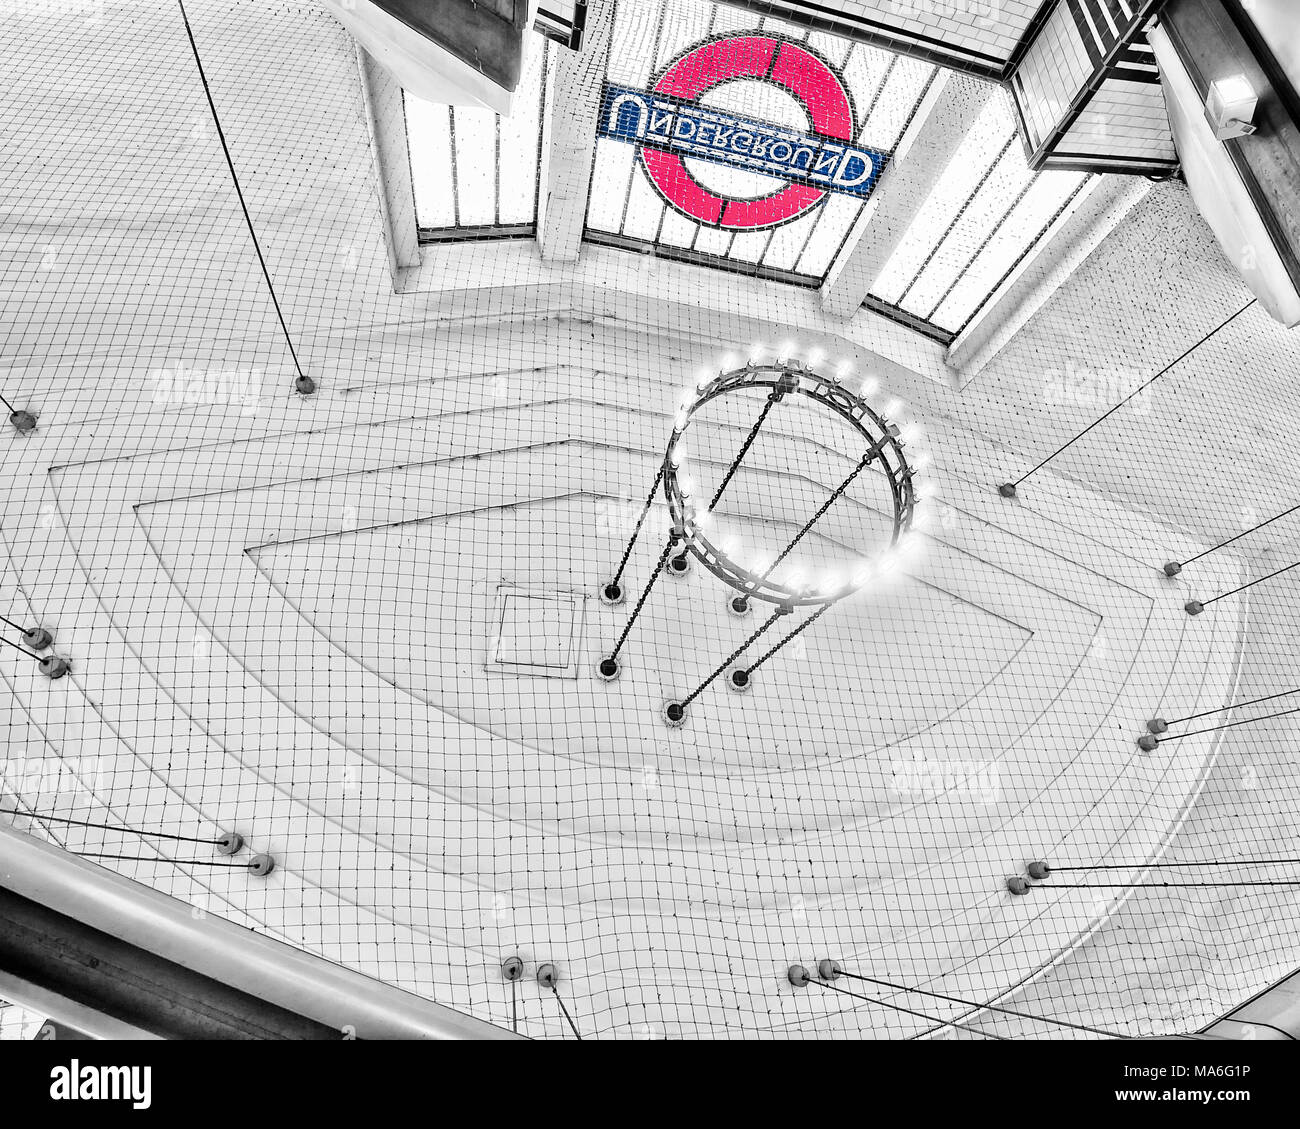 London Underground Tube Station: Balham Stock Photo